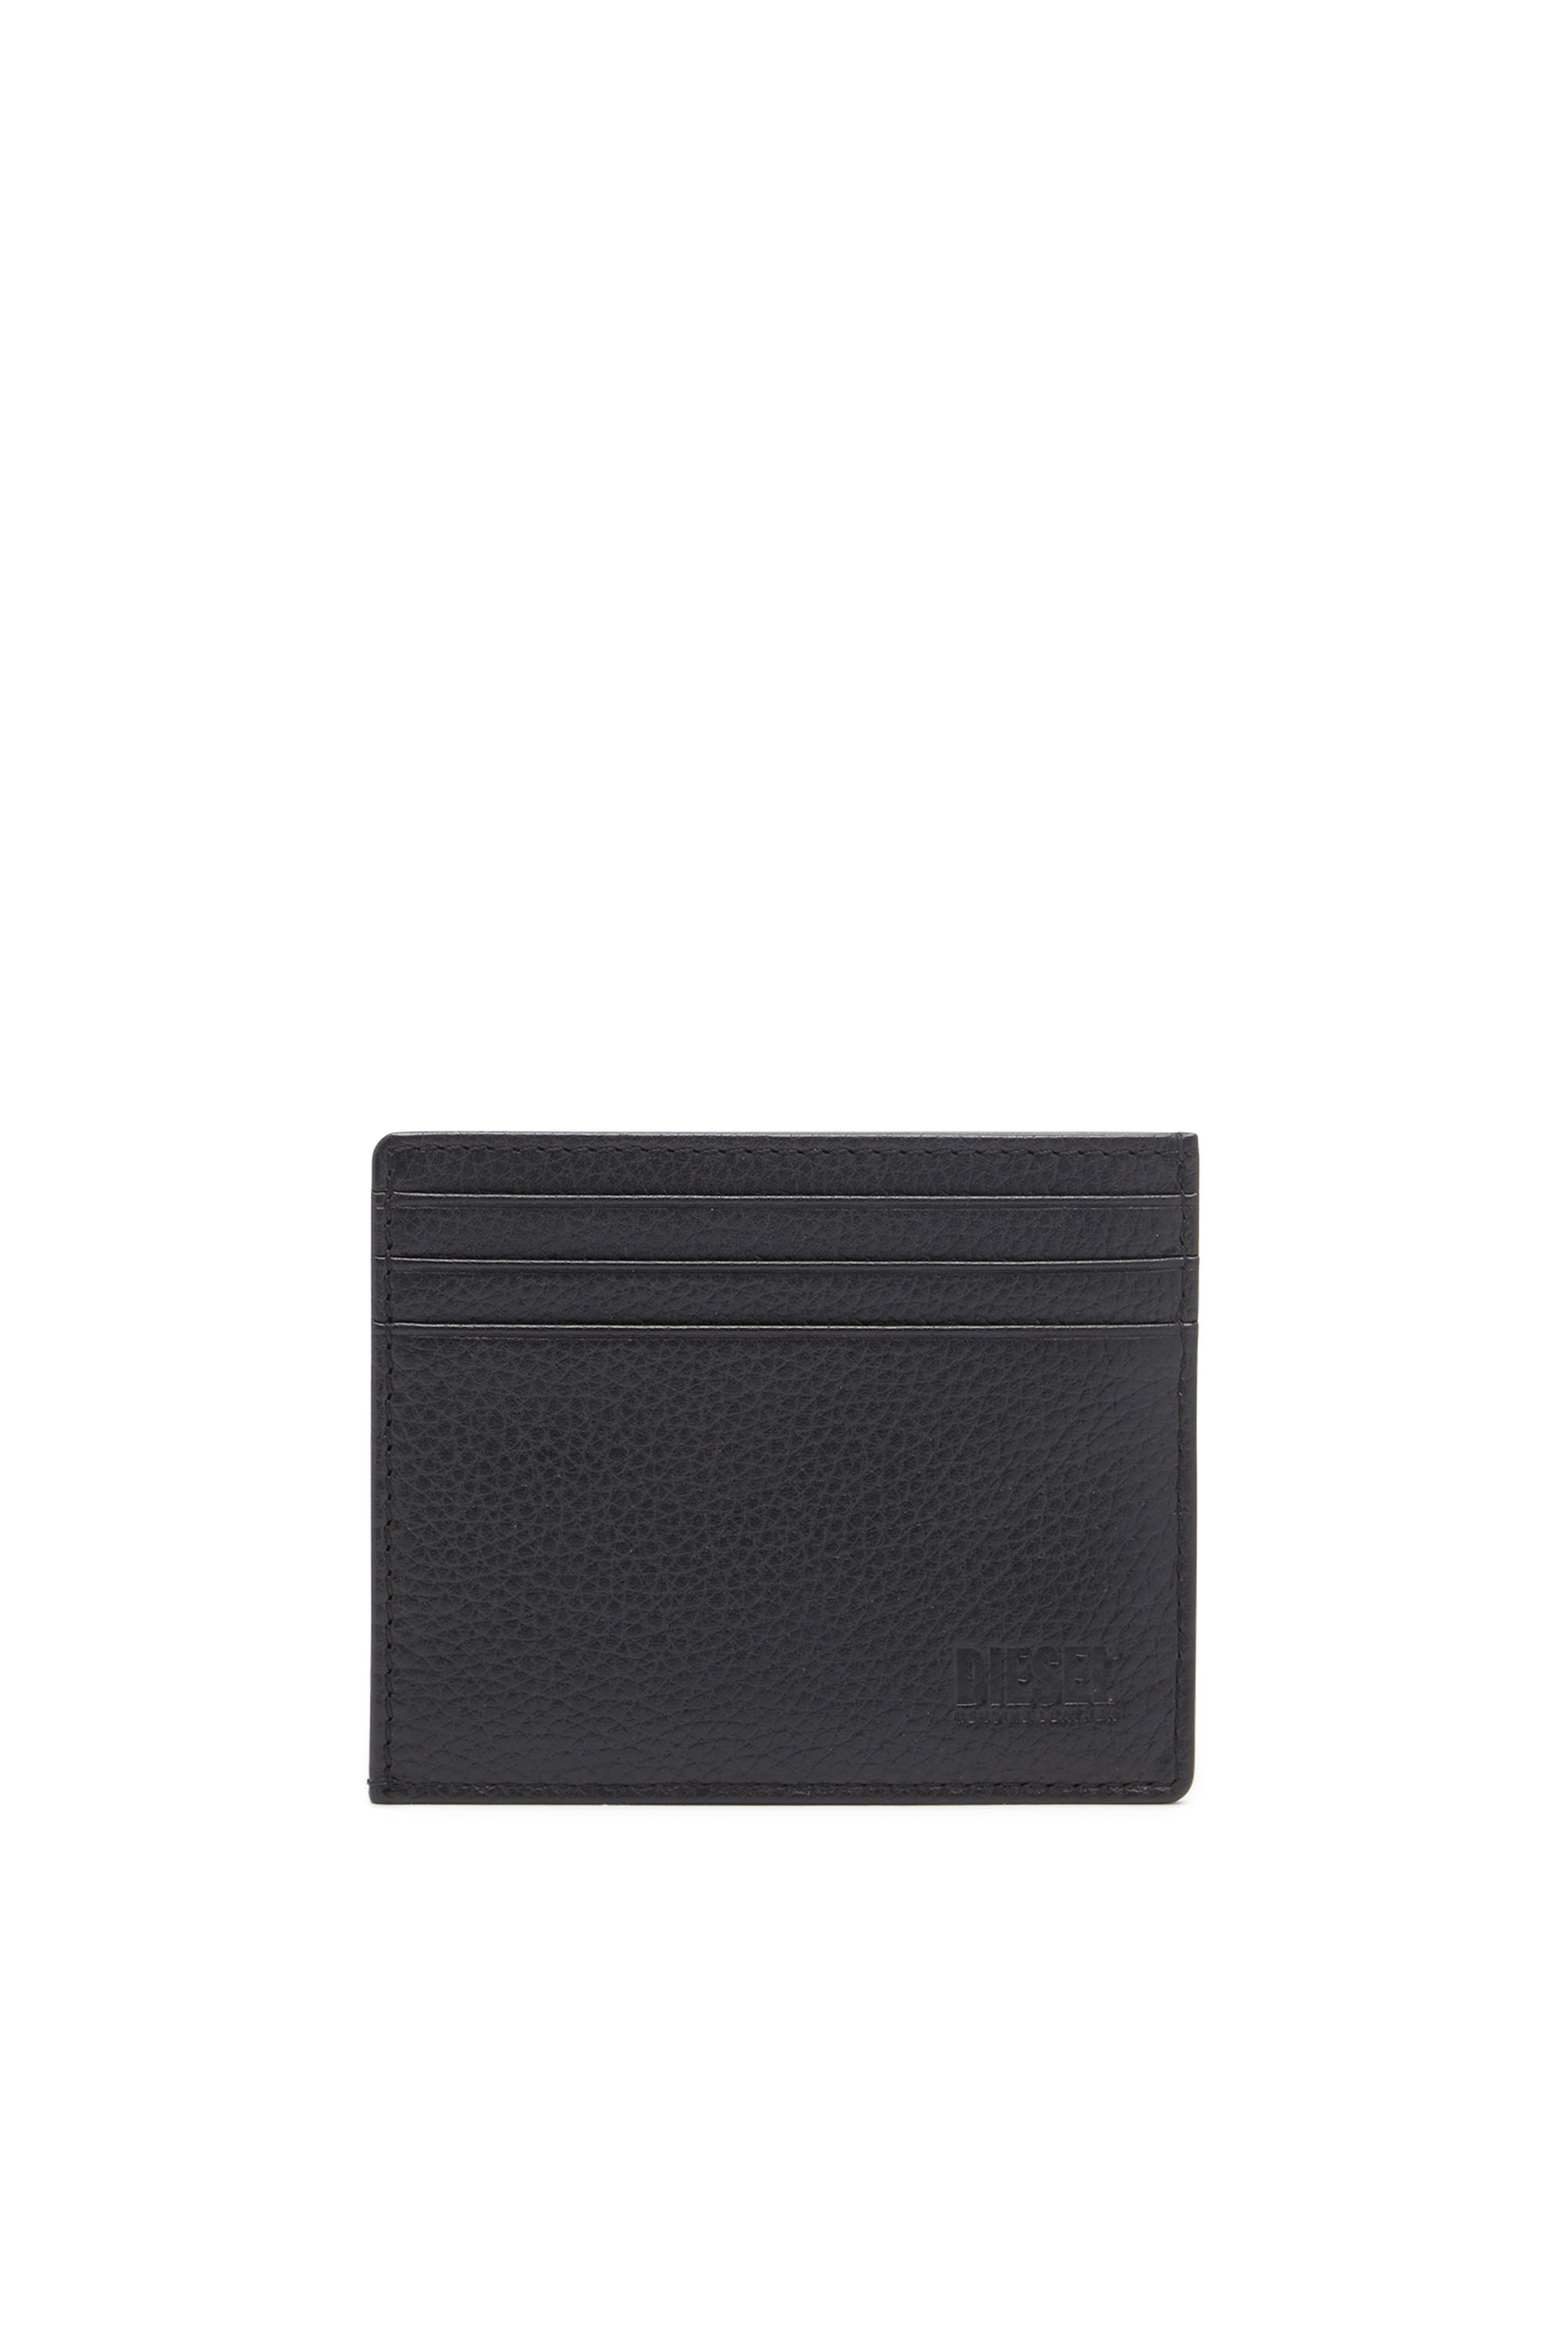 Diesel - MEDAL-D CARD HOLDER 6, Man Card holder in grainy leather in Black - Image 2